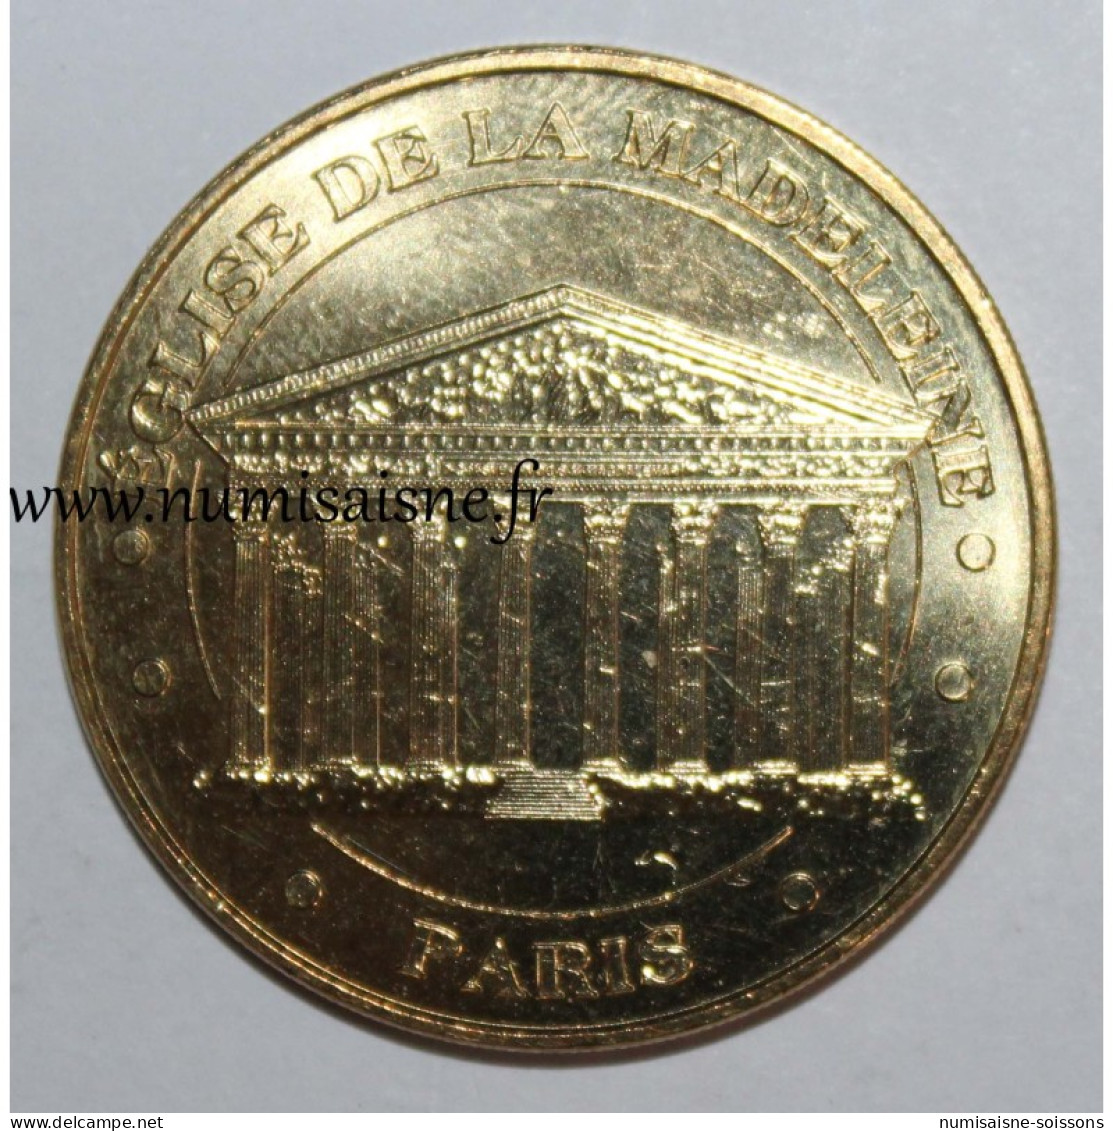 75 - PARIS - ÉGLISE DE LA MADELEINE - Monnaie De Paris - 2017 - Zonder Datum